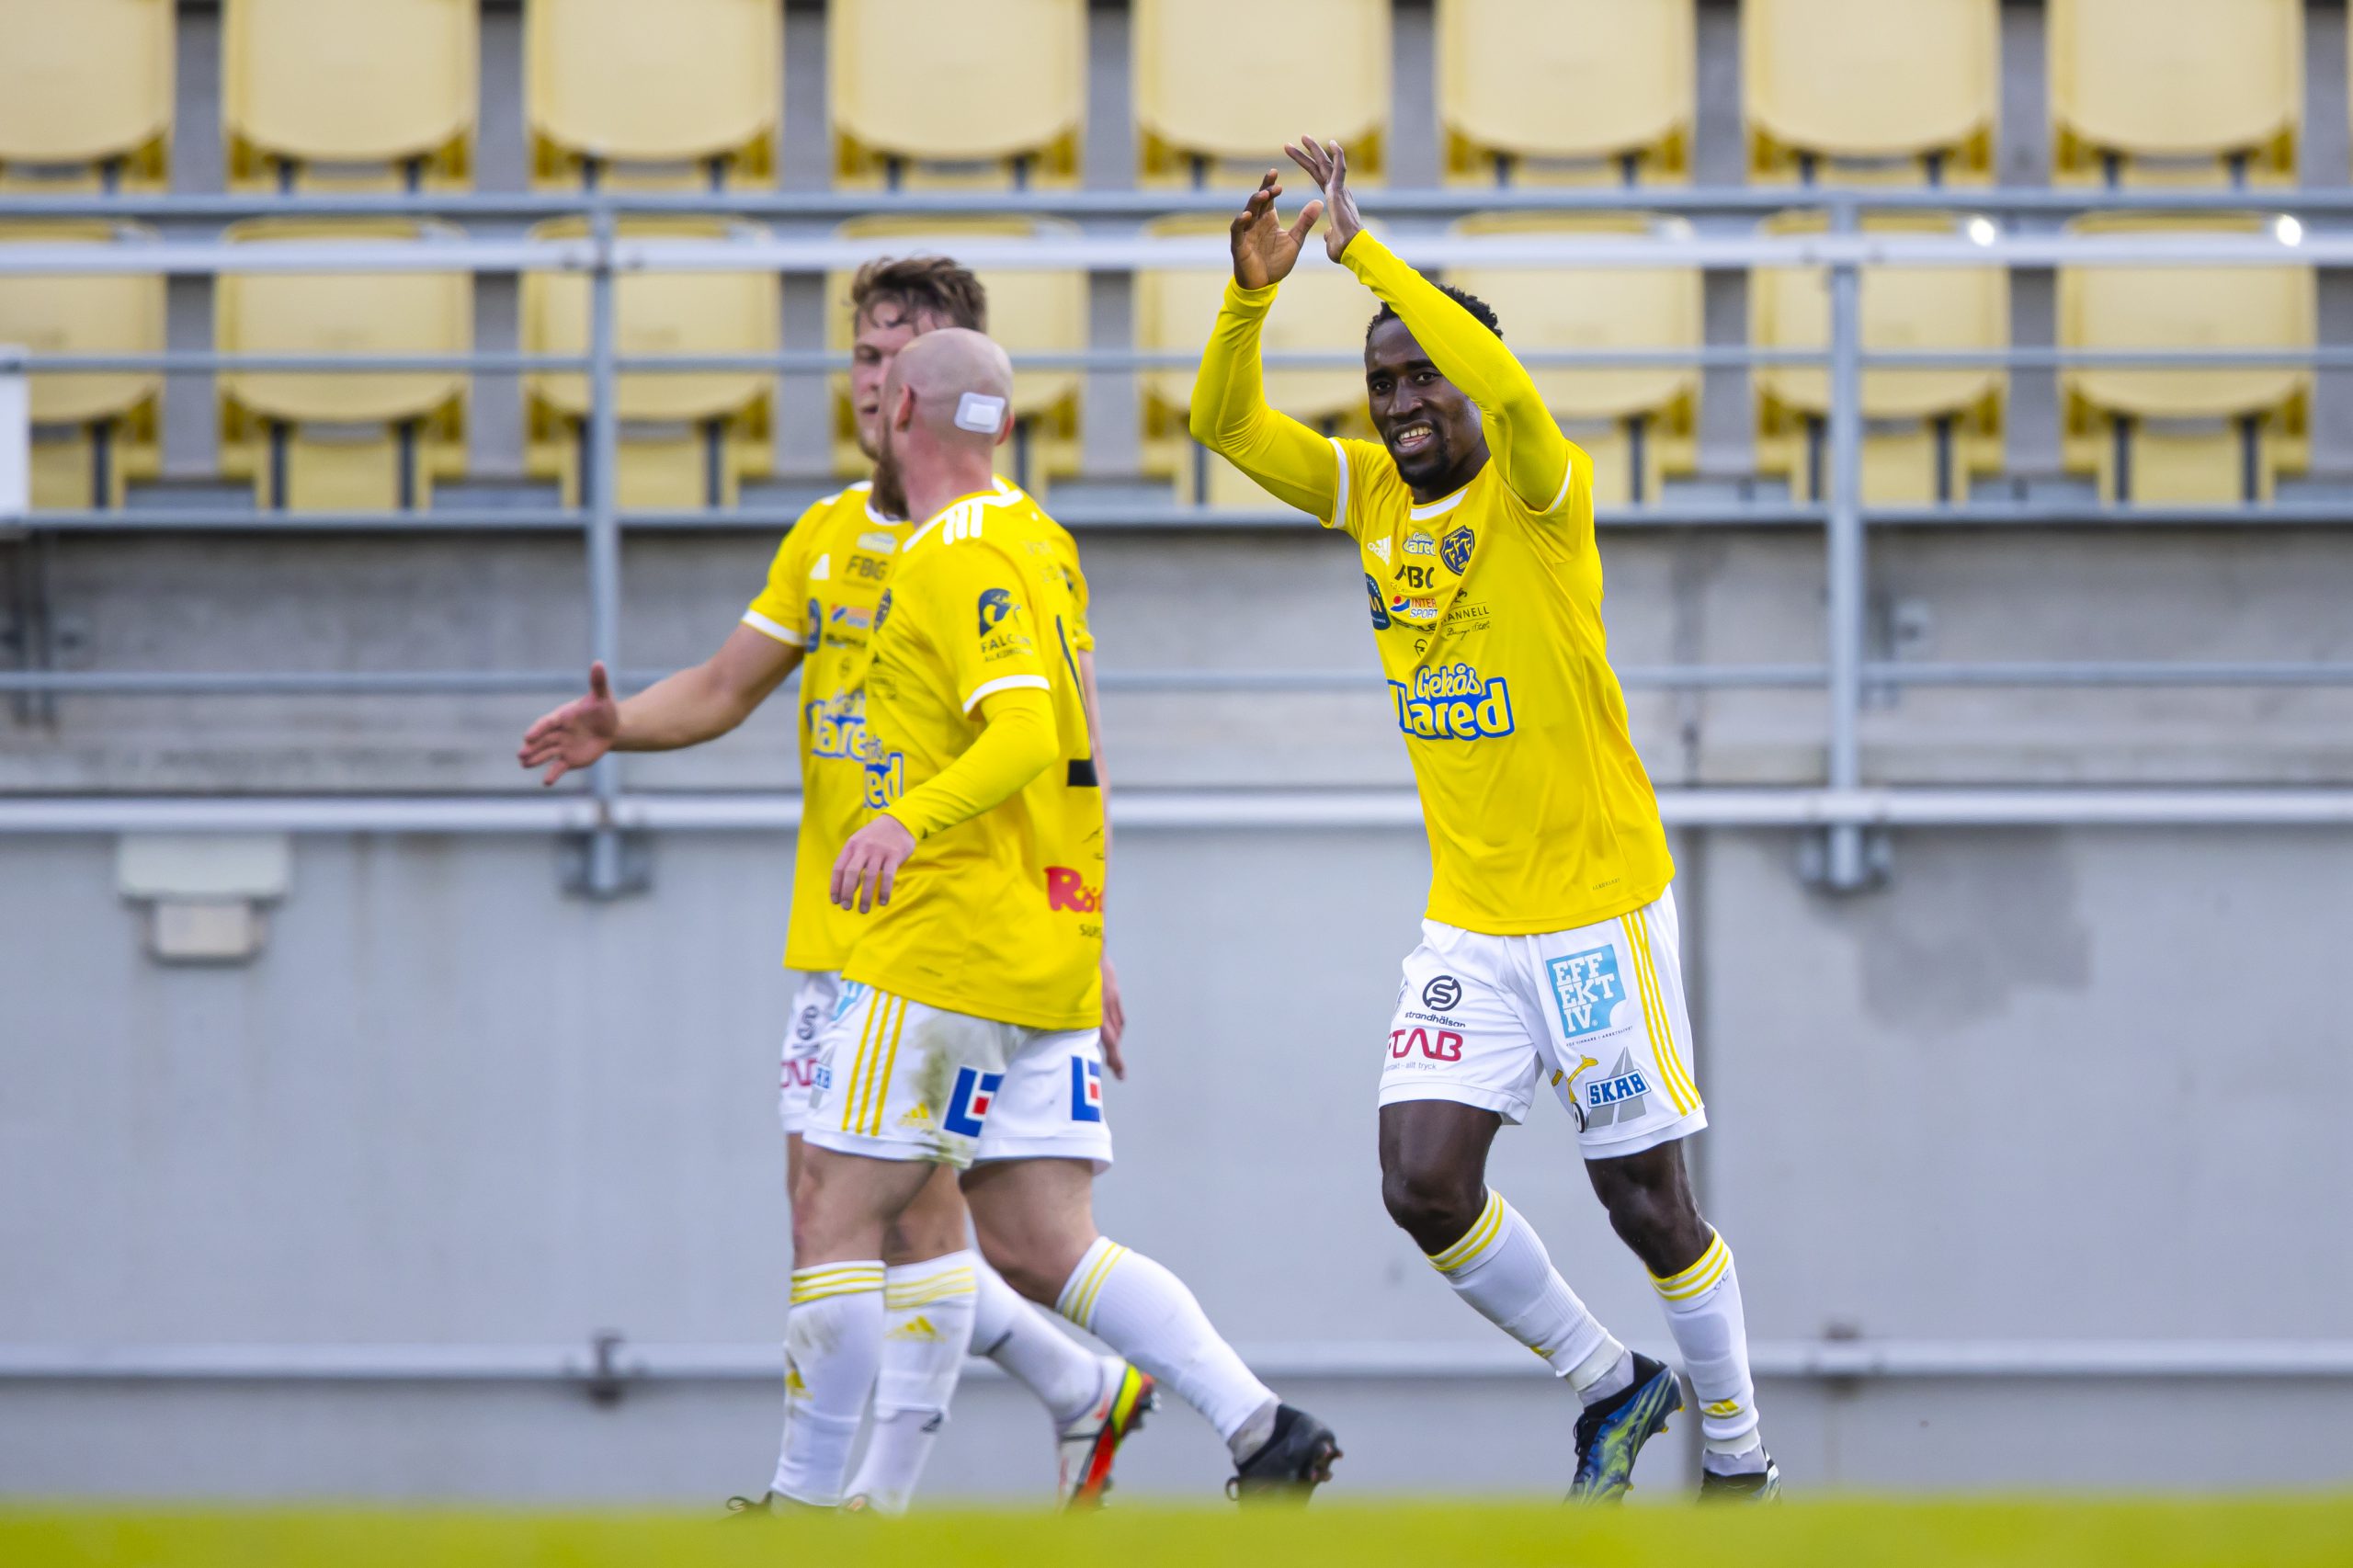 Inför FC Trollhättan Away: ”Fullt fokus på att leverera”